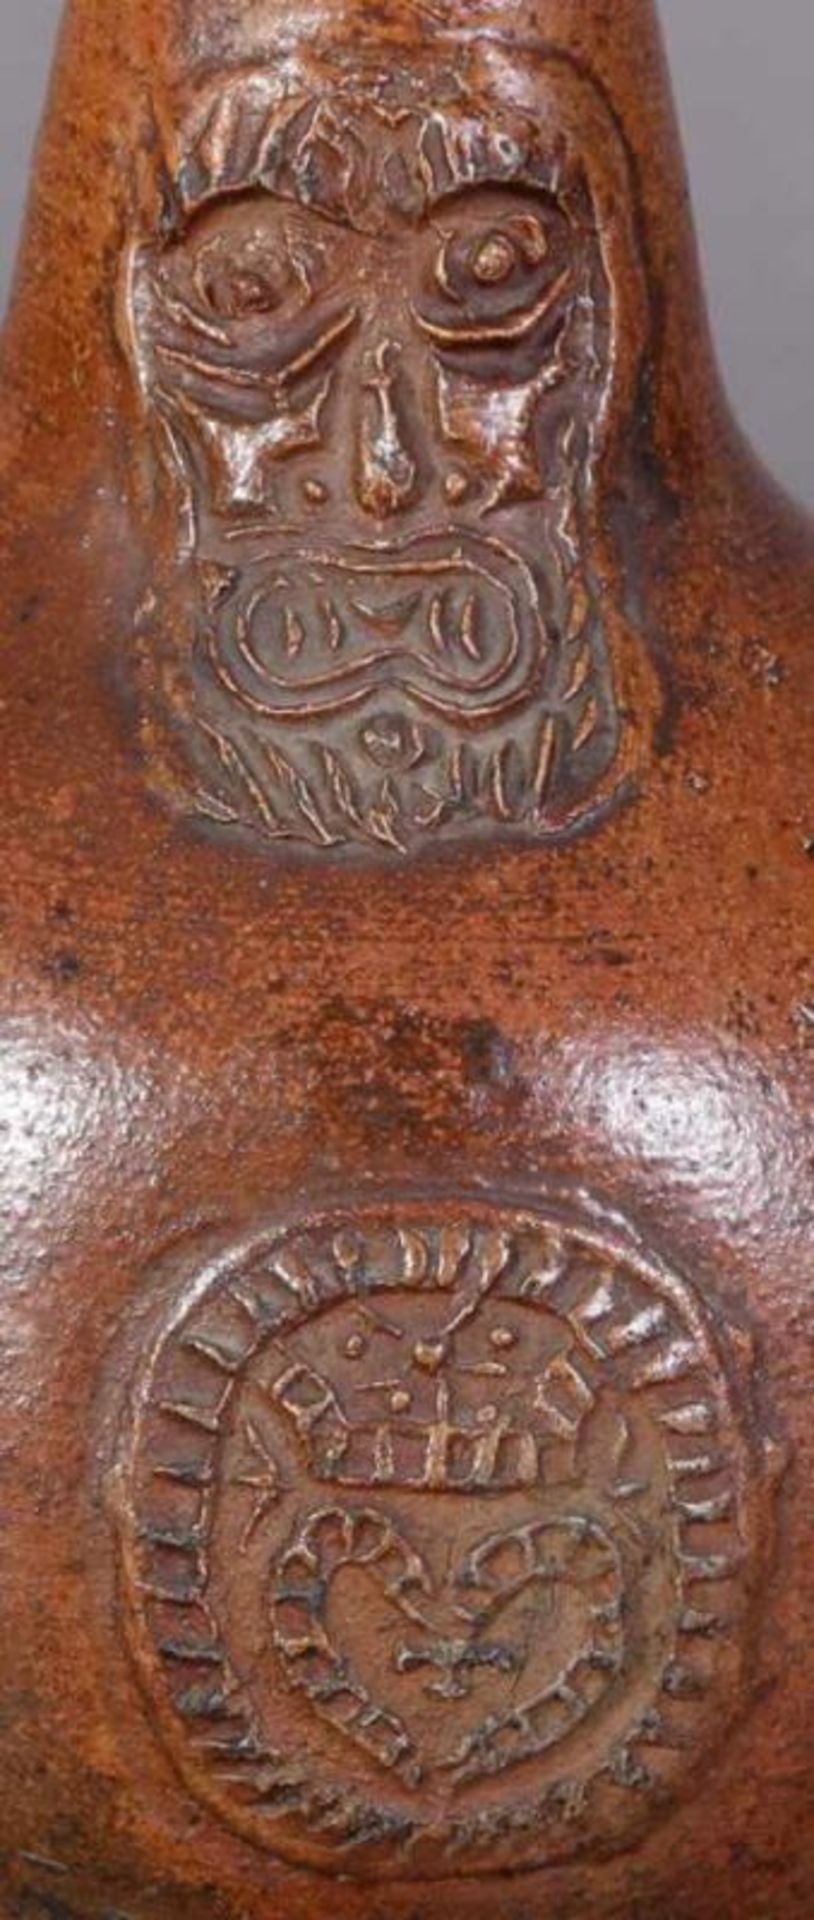 Antiker BARTMANN-KRUG, 18. Jhd., braunes salzglasiertes Steinzeug, Höhe 21 cm, Durchmesser 15 cm. - Image 6 of 6